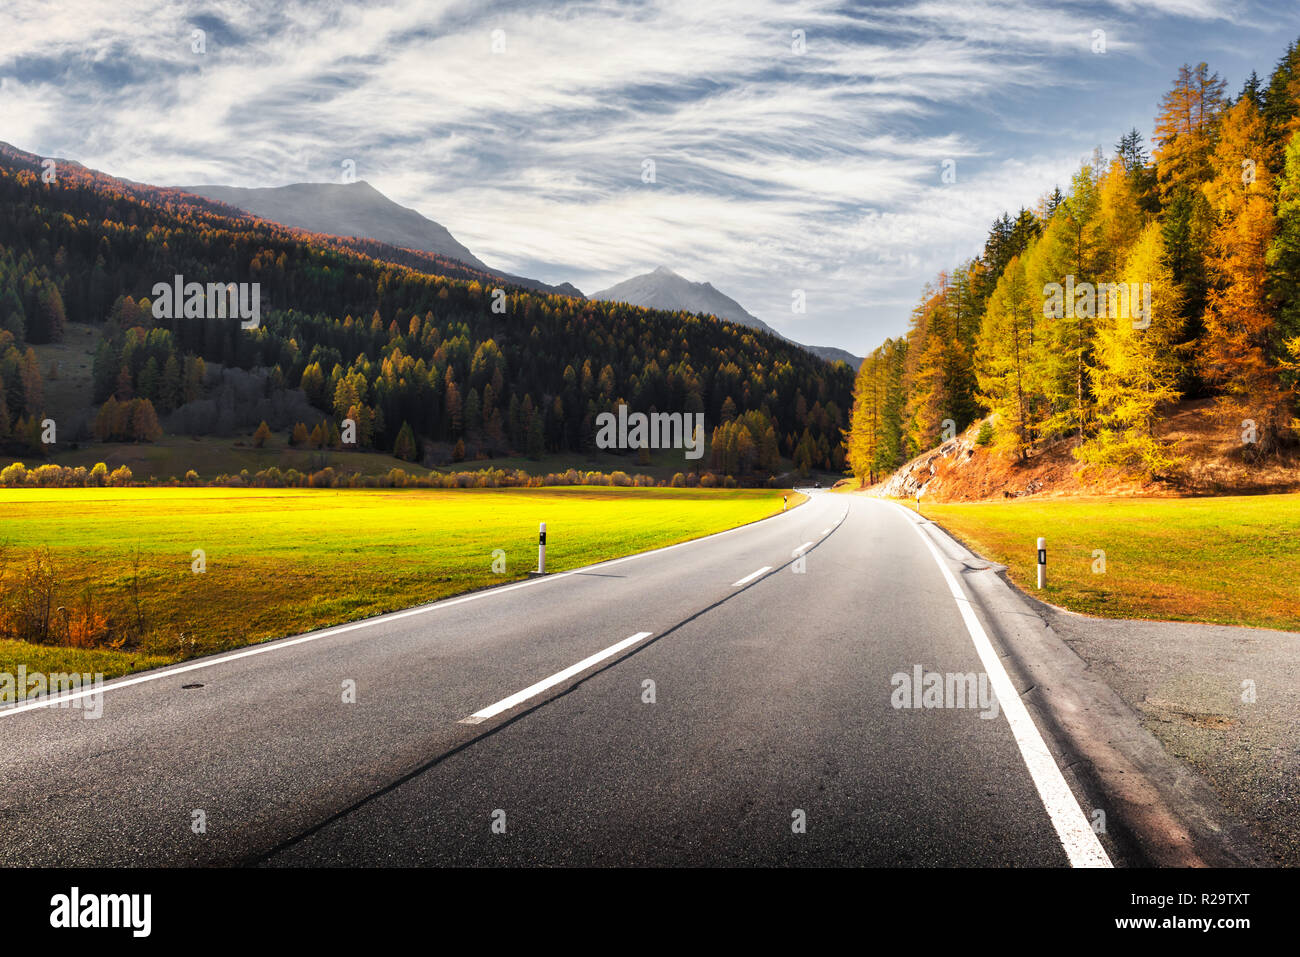 Tolle Aussicht auf Lake Road, orange Lärchenwald und die hohen Berge im Hintergrund. Die Schweiz, in der Nähe der italienischen Grenze. Landschaftsfotografie Stockfoto